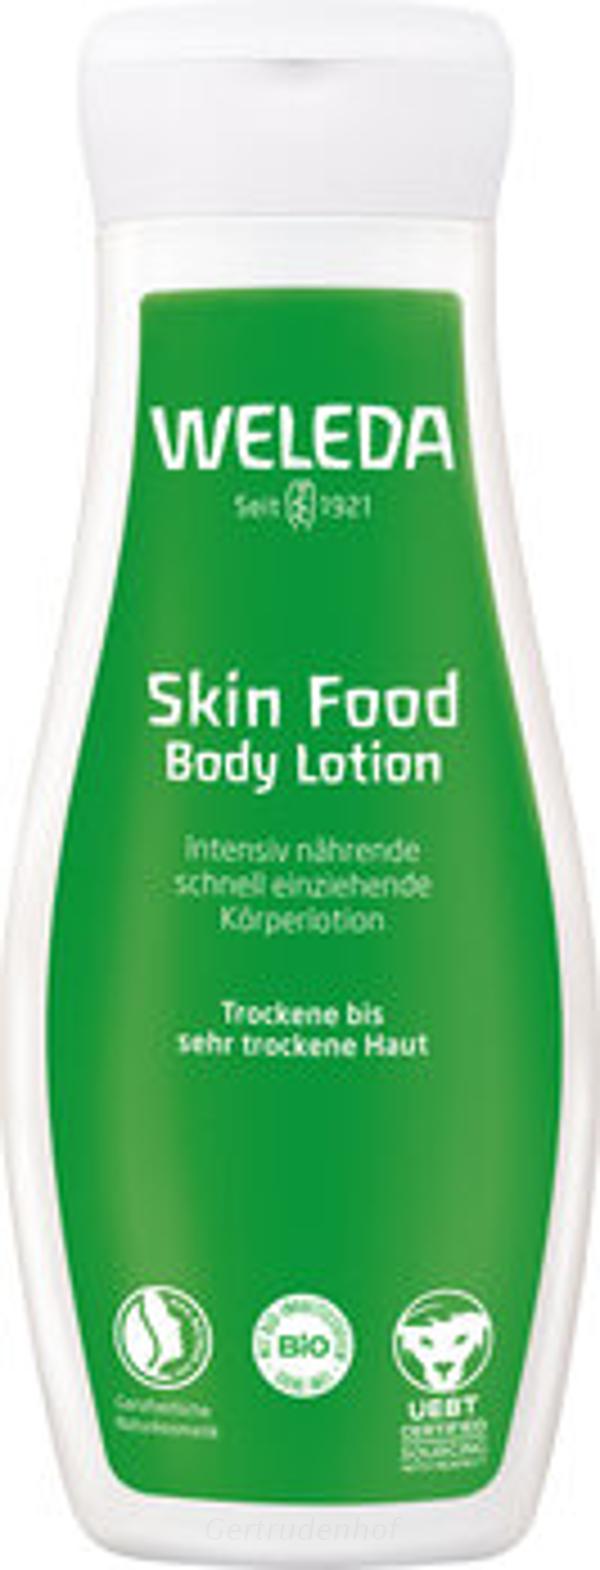 Produktfoto zu Skin Food Bodylotion 200ml WEL